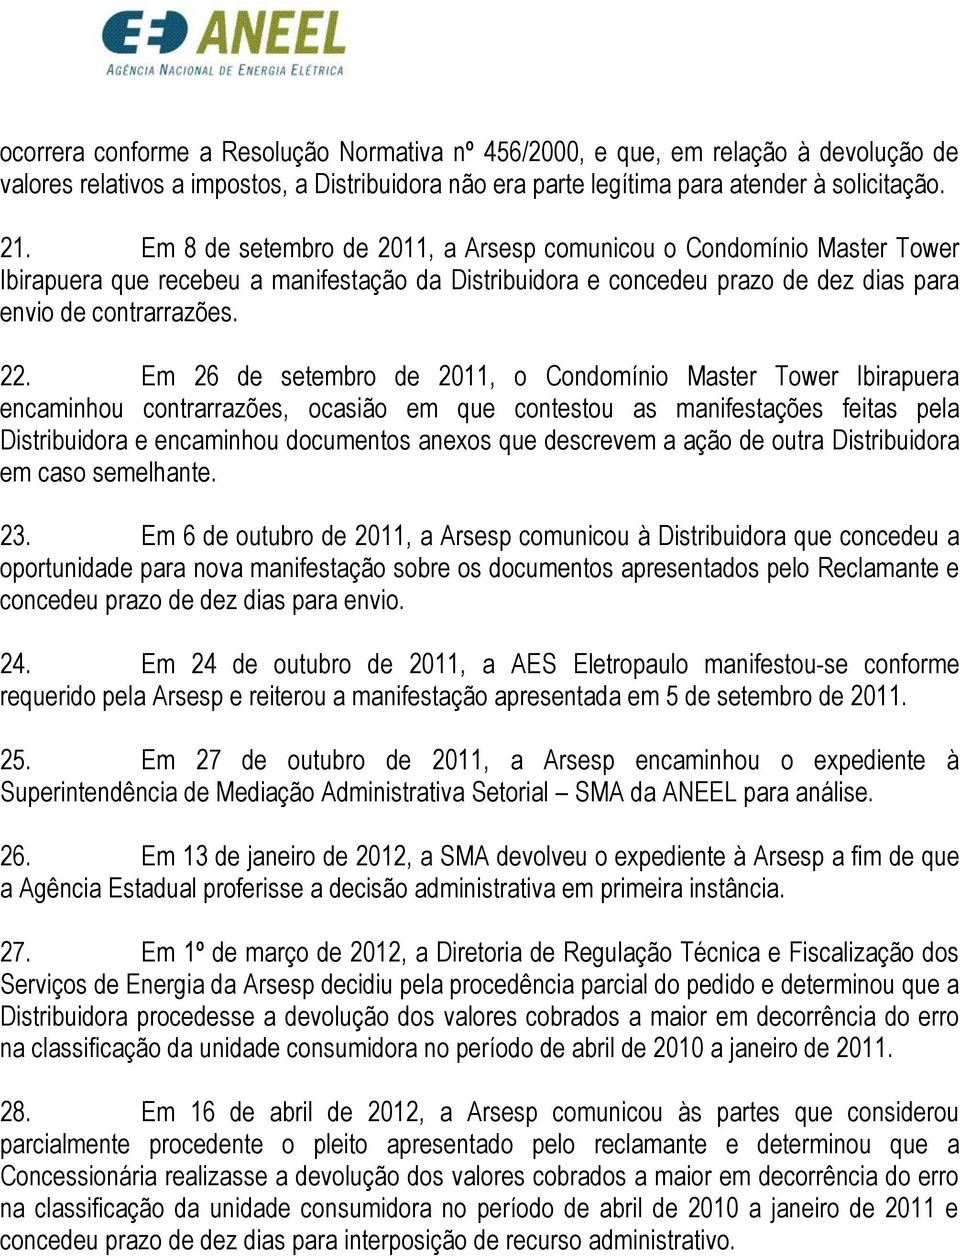 Em 26 de setembro de 2011, o Condomínio Master Tower Ibirapuera encaminhou contrarrazões, ocasião em que contestou as manifestações feitas pela Distribuidora e encaminhou documentos anexos que